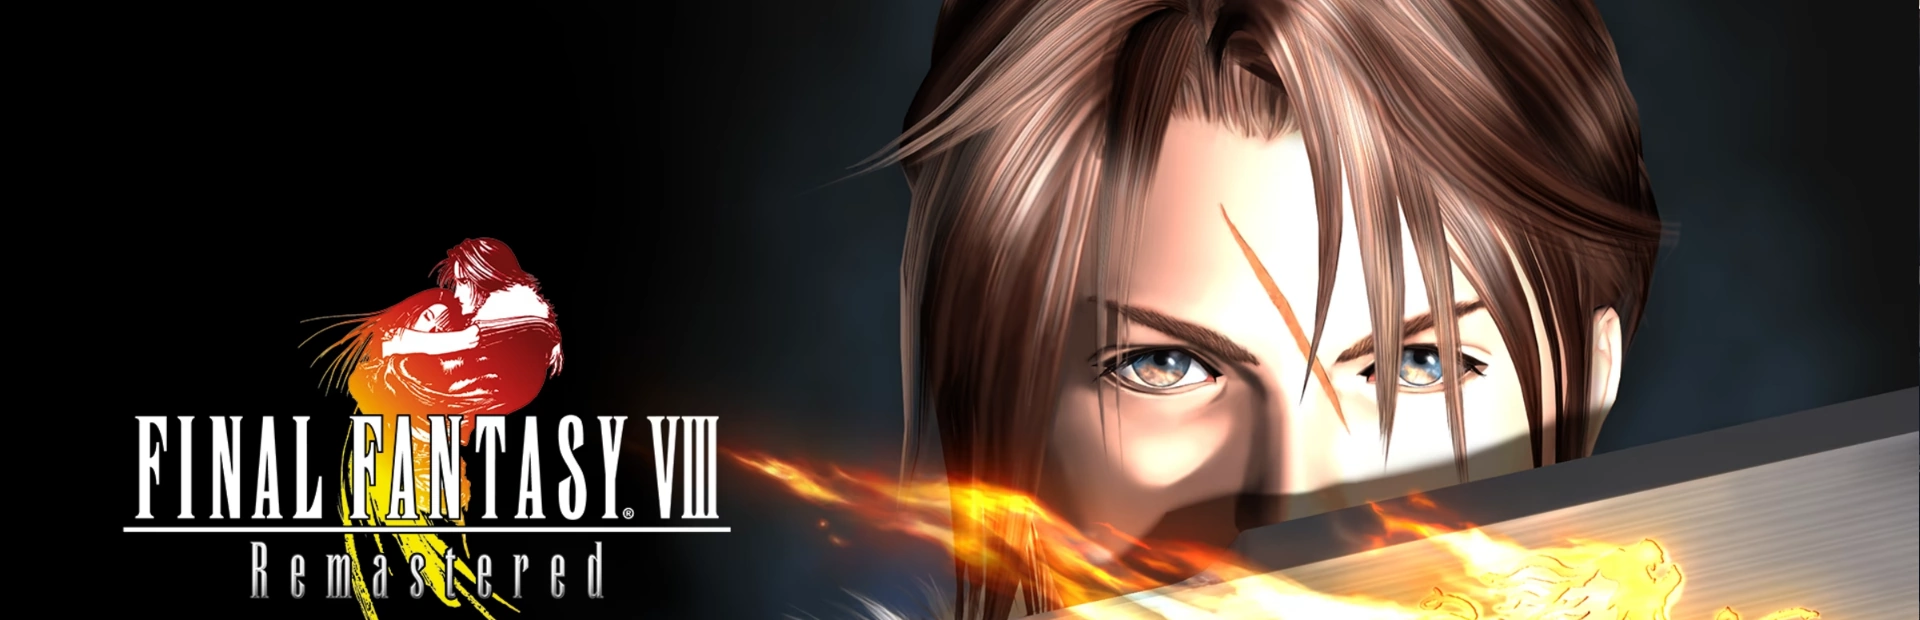 Final Fantasy VIII Remastered.banner1